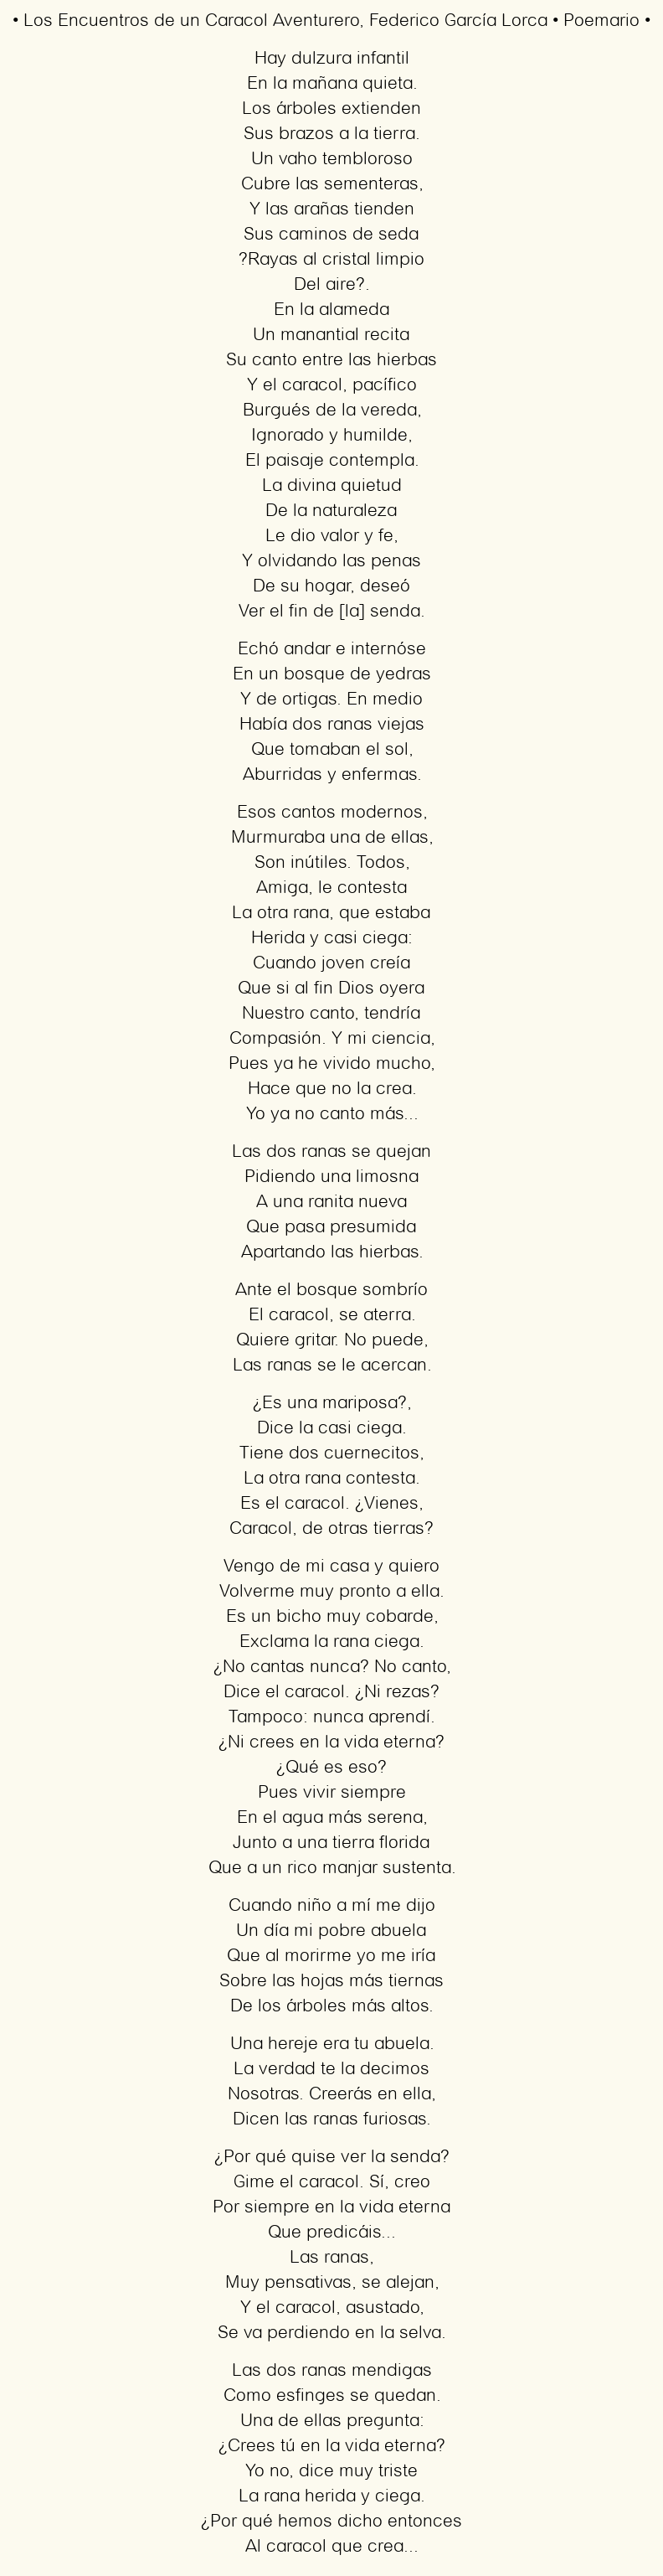 Imagen con el poema Los Encuentros de un Caracol Aventurero, por Federico García Lorca